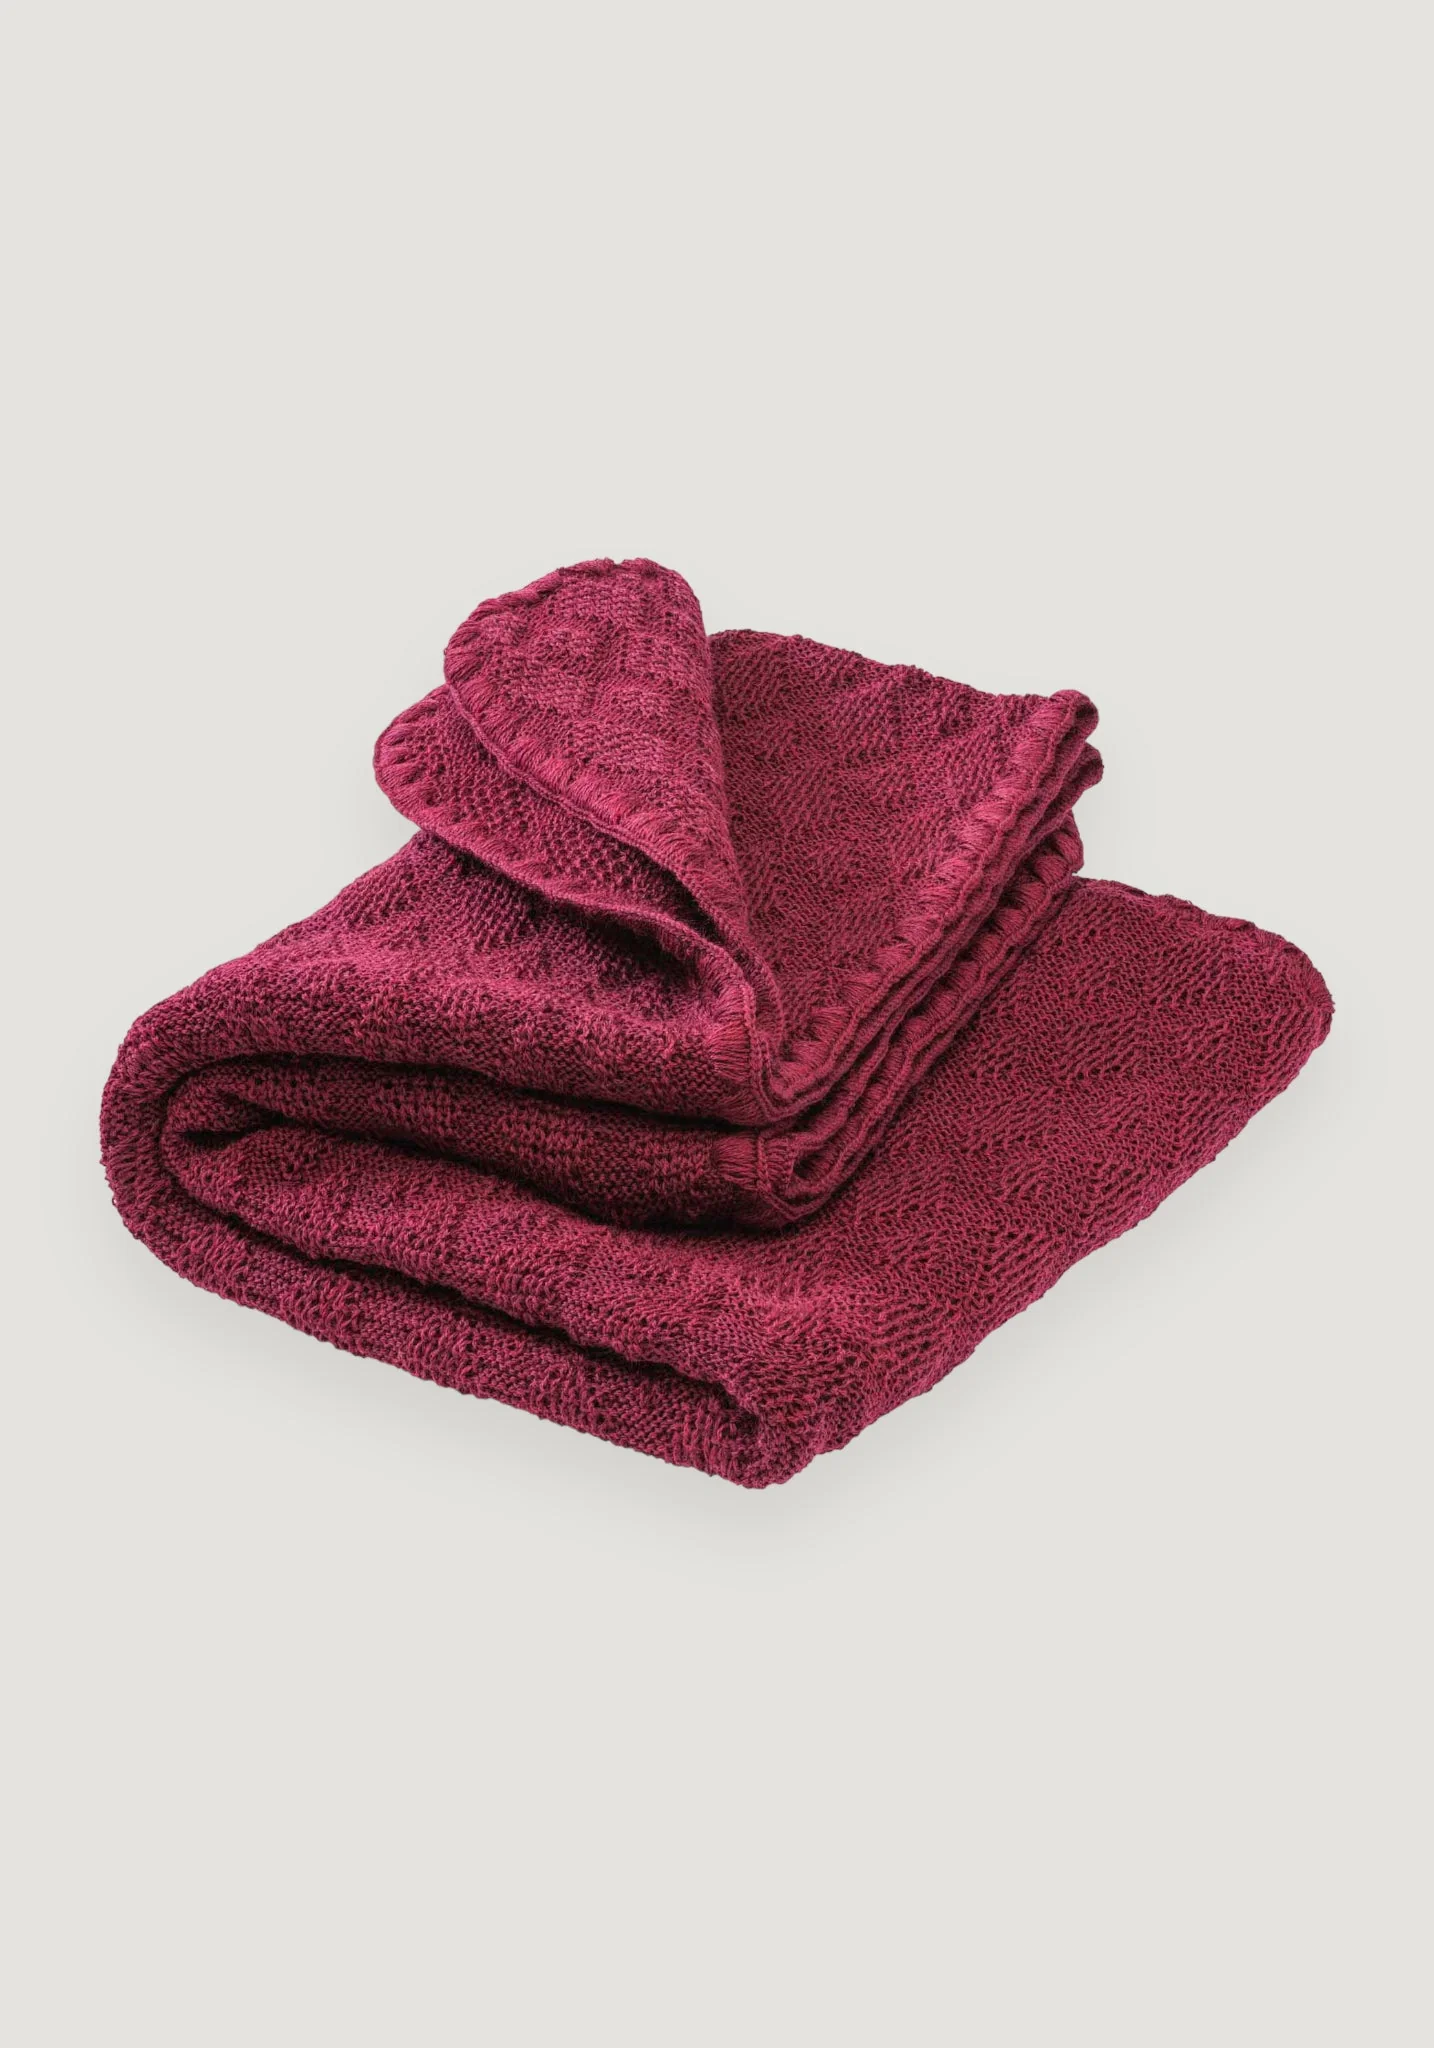 Pătură Disana din lână merinos tricotată pentru bebeluși Cassis